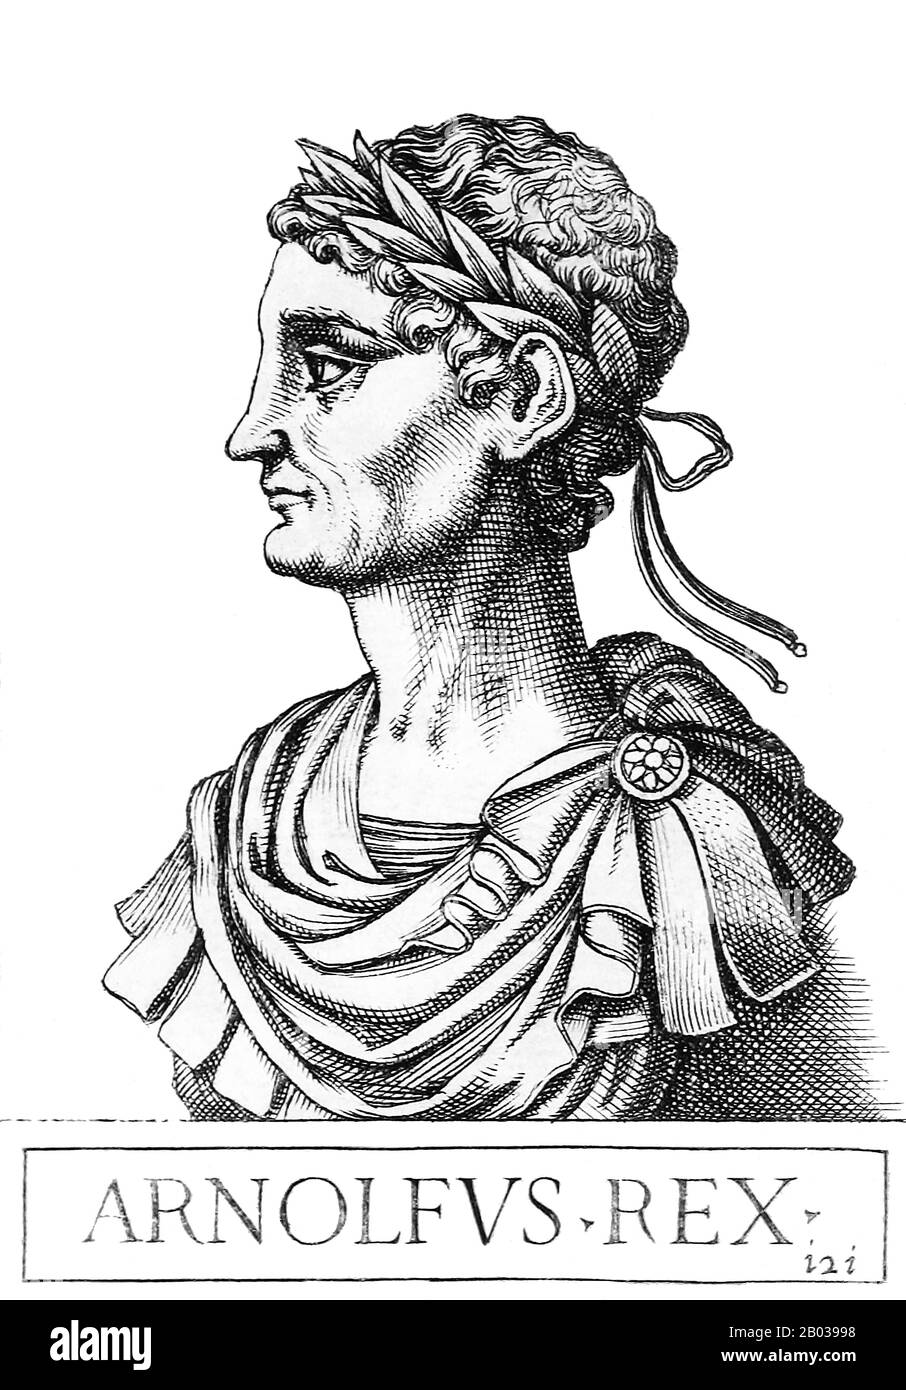 Arnulf (850-899), noto anche come Arnulf della Carinzia, era il figlio illegittimo del re Carloman di Baviera e nipote dell'imperatore Carlo Il Grasso. Arnulf divenne Duca di Carinzia, e più o meno governò anche la Baviera. L'ambizione di Arnulf lo portò a condurre una rivolta incruenta nel 887, che vide suo zio deposto come imperatore e Arnulfo incoronato come re di Francia orientale. Arnulf era un re guerriero piuttosto che diplomatico, costantemente in lotta contro gli Slavi, i danesi e i Normanni. Ha approfittato del conflitto interno in Francia occidentale per assicurare il territorio di Lotharingia, dandolo a suo figlio. Intervenne contro Foto Stock